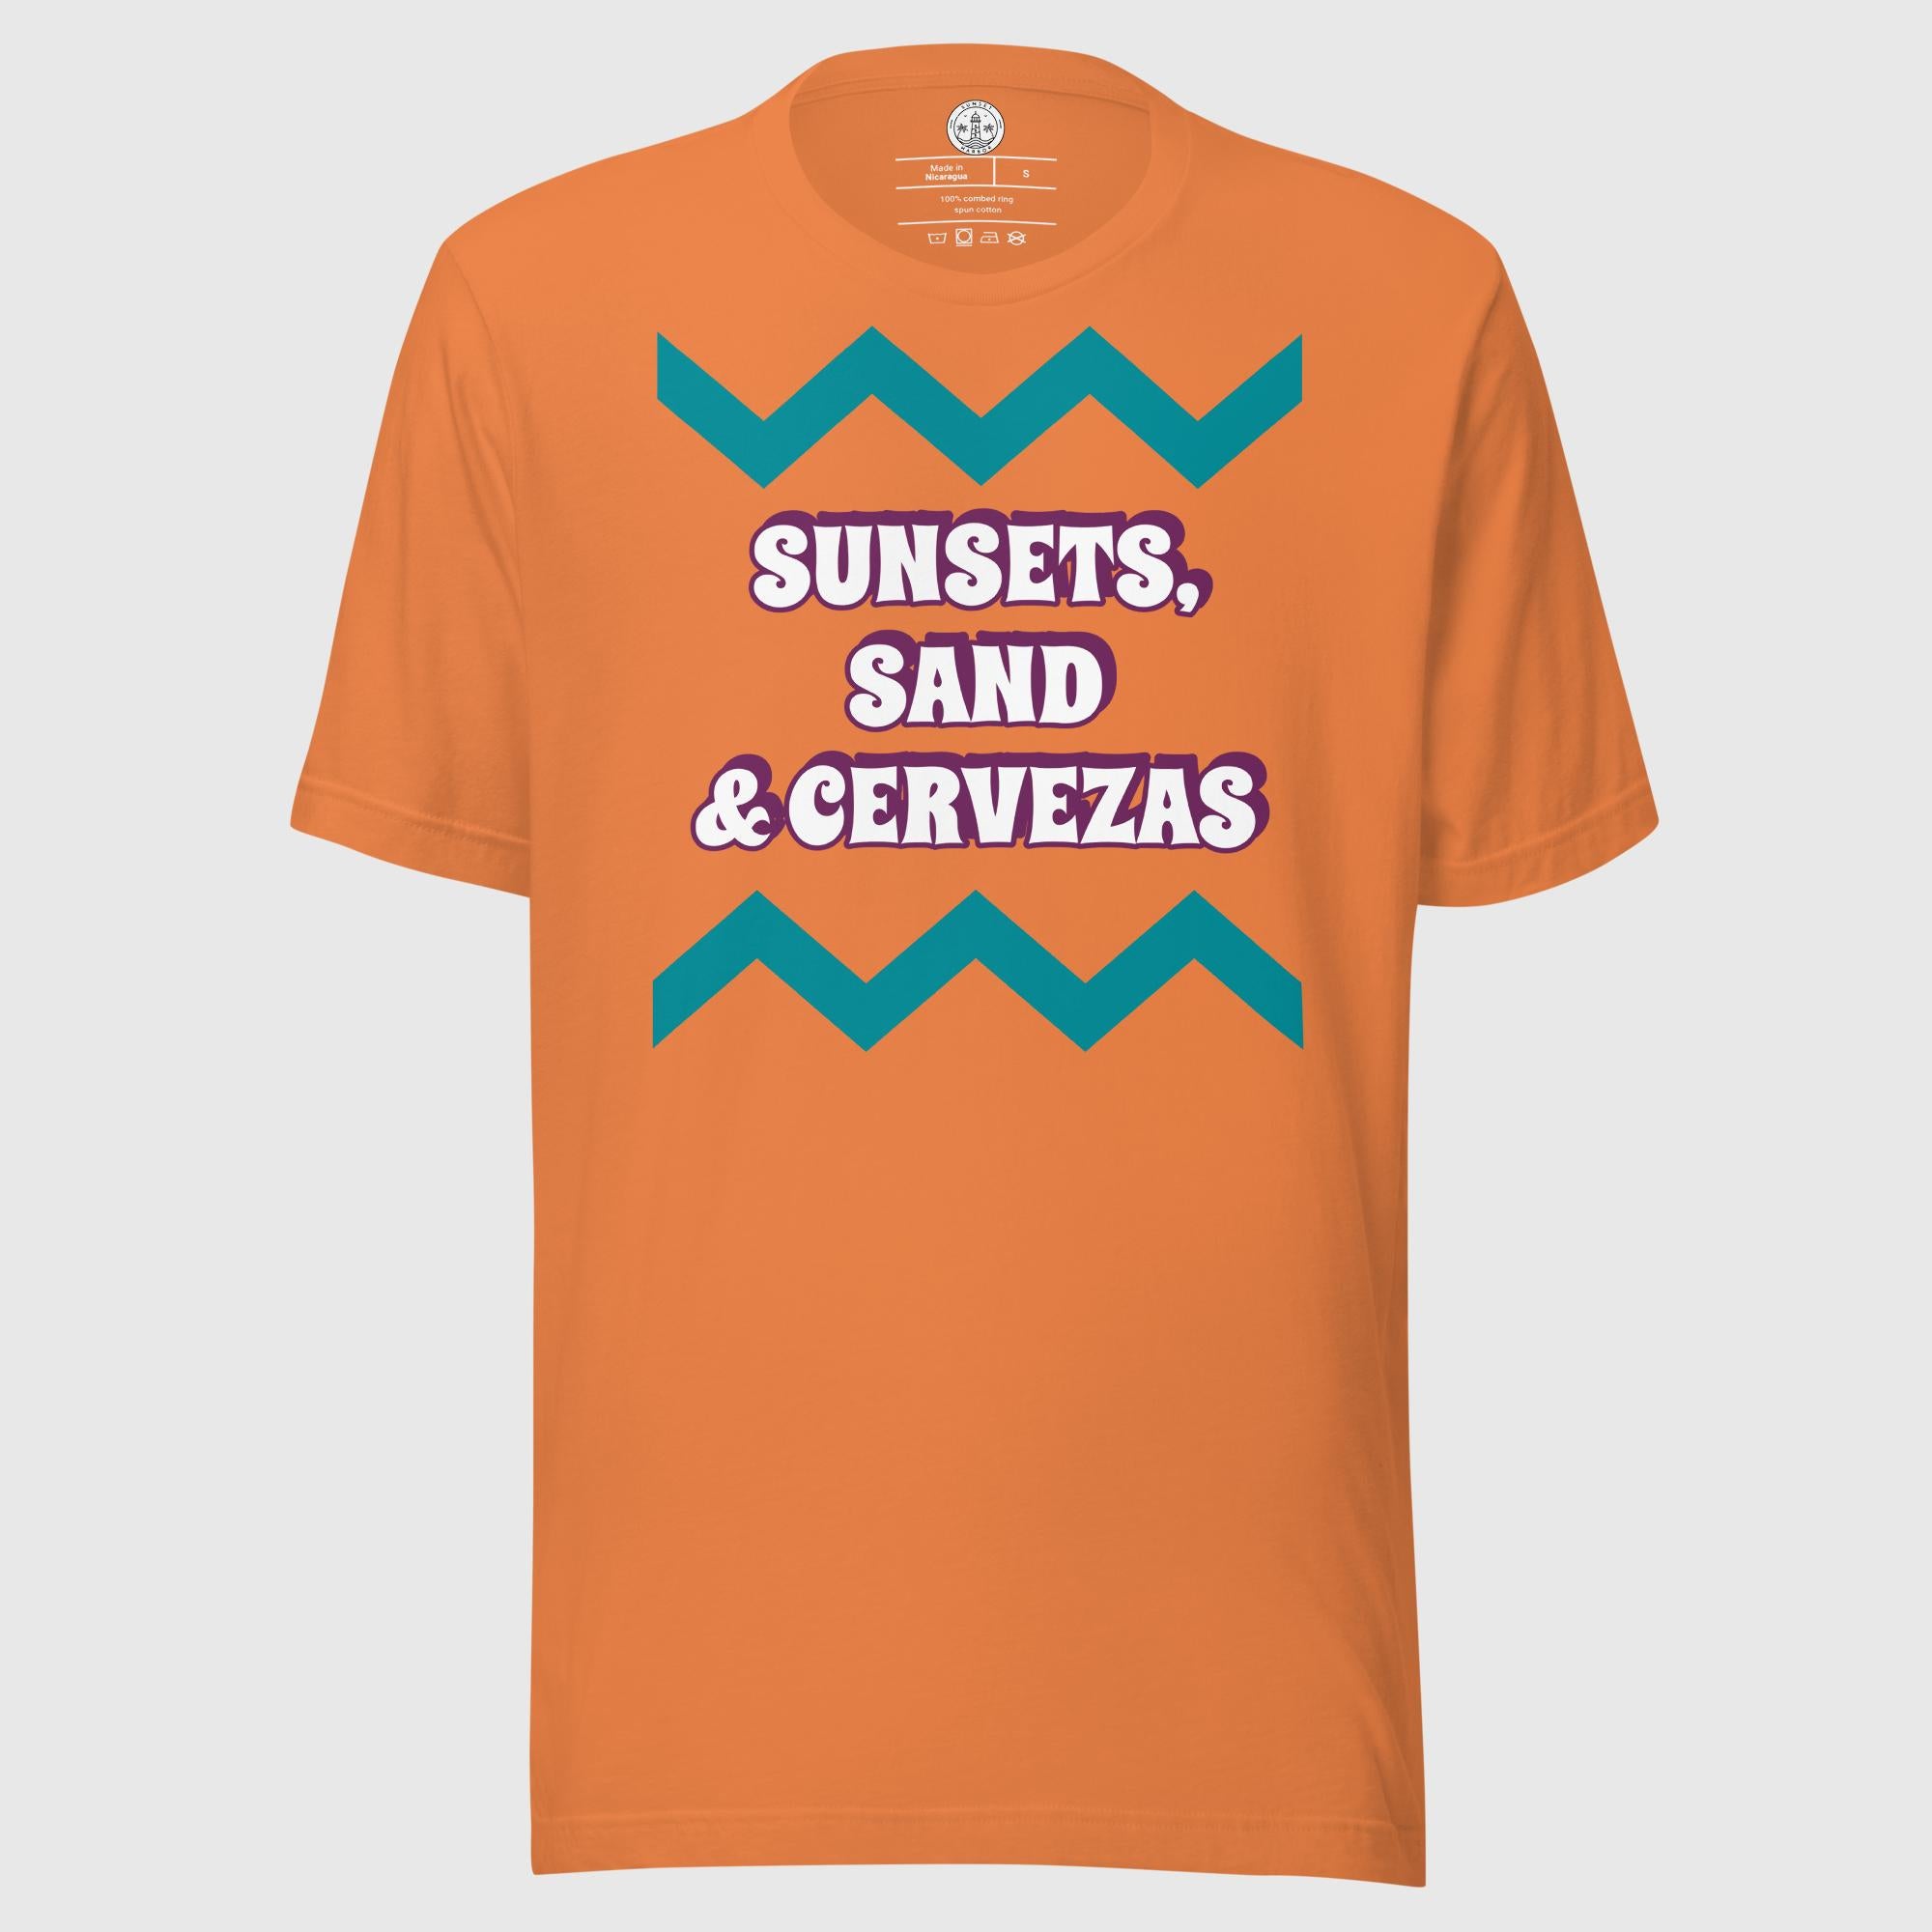 Unisex t-shirt - Sunsets, Sand & Cervezas